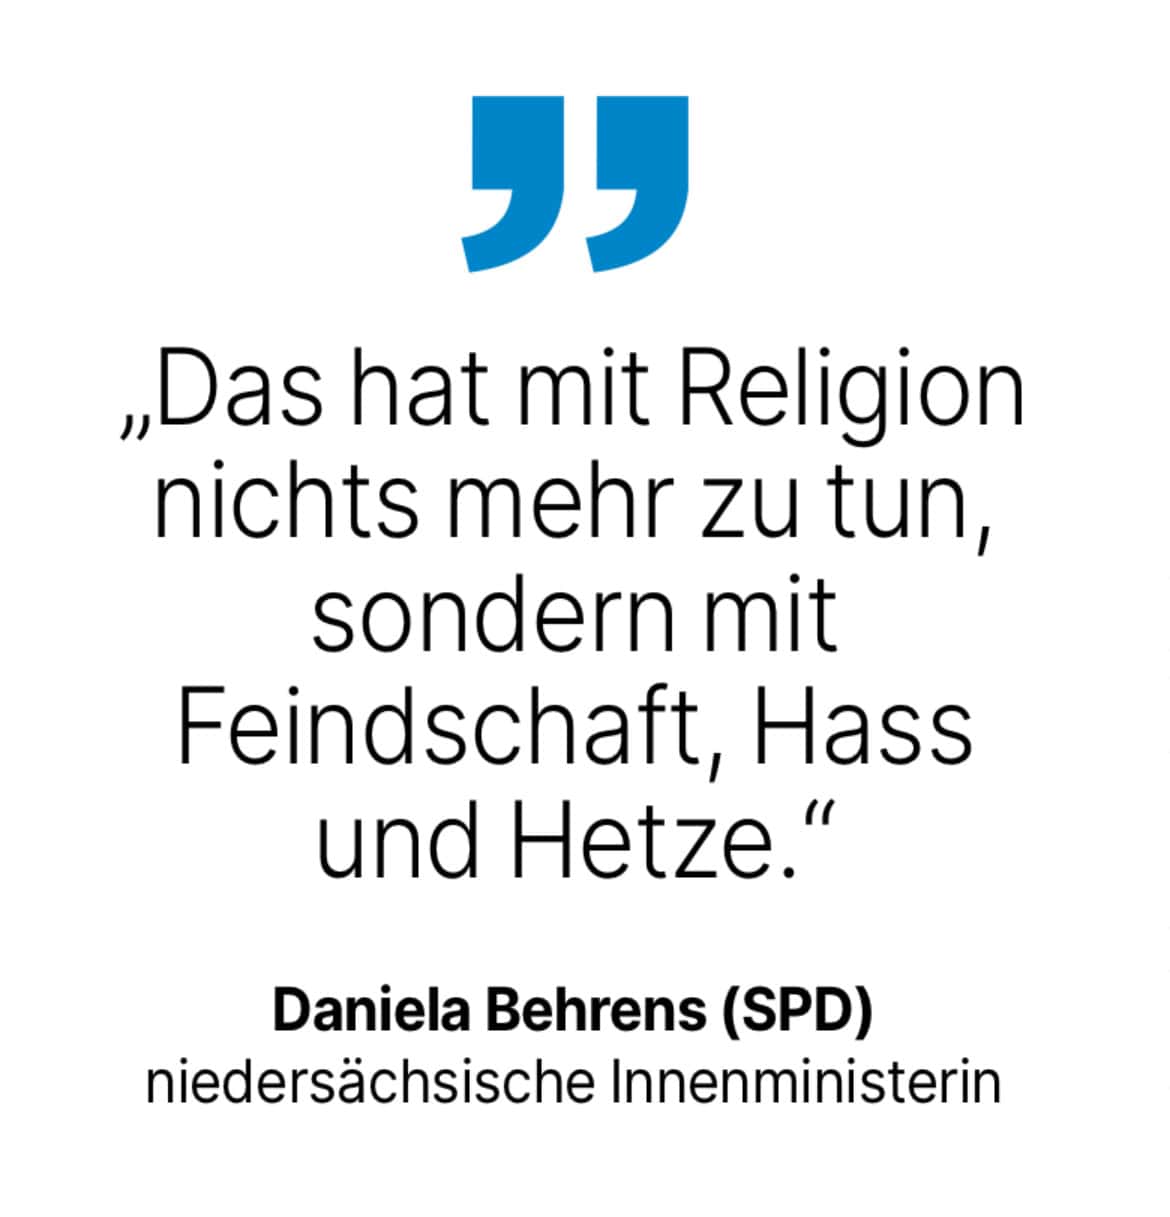 Daniela Behrens (SPD) niedersächsische Innenministerin: Das hat mit Religion nichts mehr zu tun, sondern mit Feindschaft, Hass und Hetze.